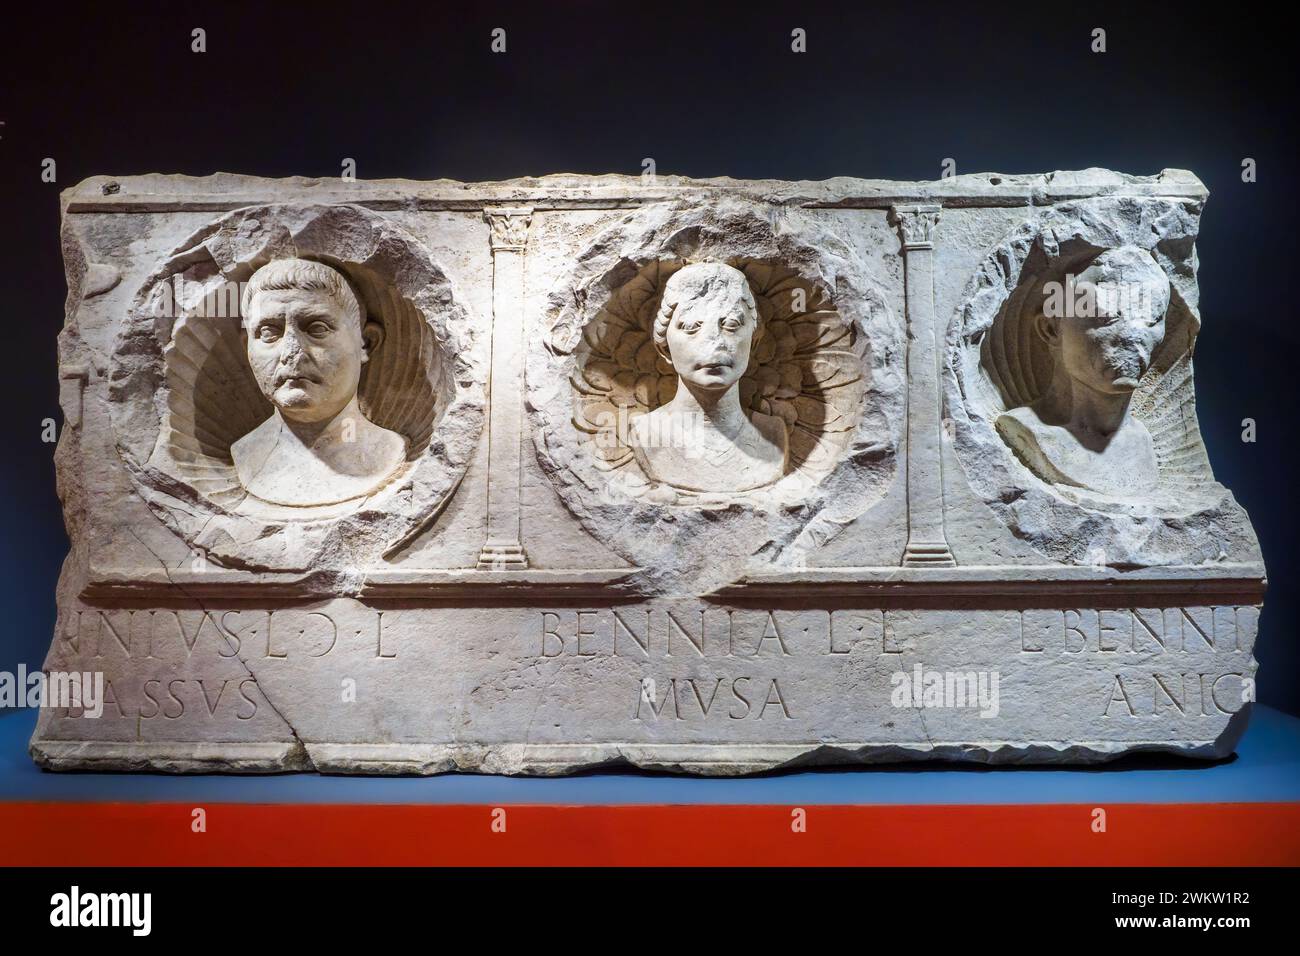 Grabrelief der Familie Benni - Marmor aus dem Jahr 1-50 n. Chr. Lunense - die Figuren sind in den mit Pflanzenmotiven verzierten Nischen dargestellt - Museo Centrale Montemartini, Rom, Italien Stockfoto